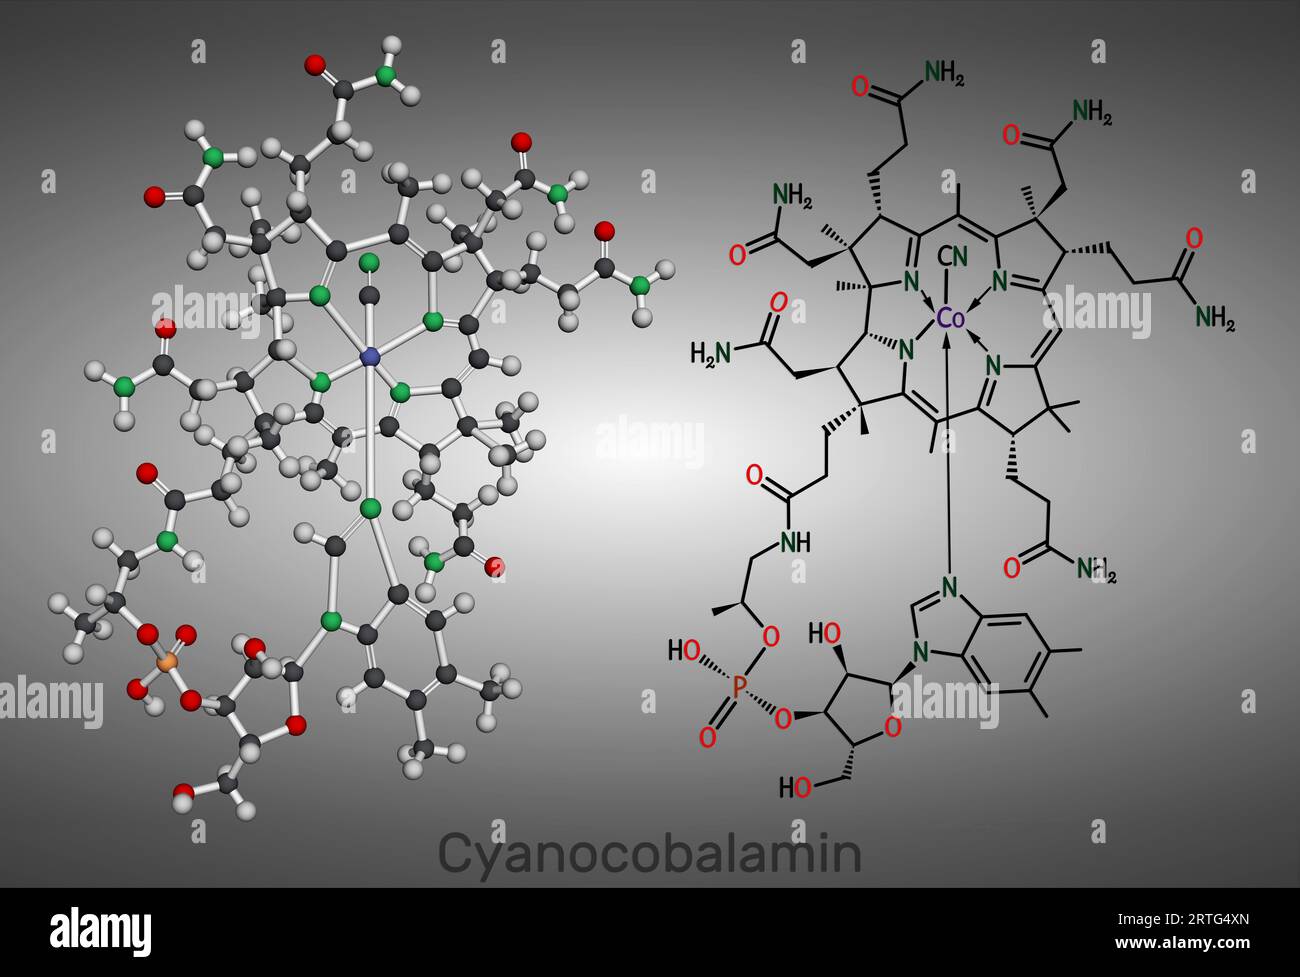 Cyanocobalamine, molécule de cobalamine. C'est une forme de vitamine B12. Formule chimique structurale et modèle moléculaire. Illustration Banque D'Images